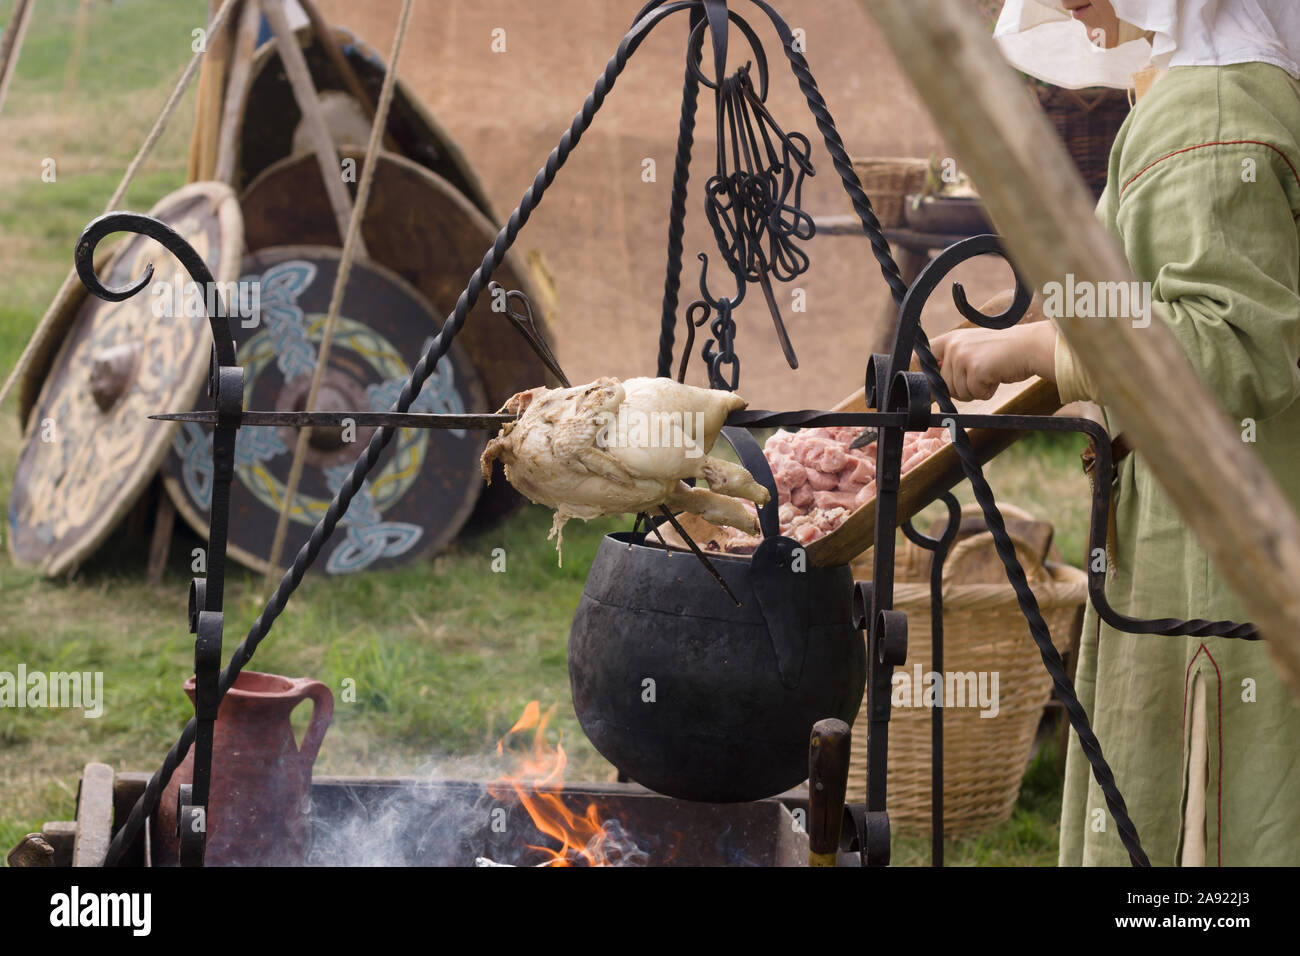 Mujer vestida con traje medieval preparando la comida en una nueva promulgación de campamento con un spit, pollo asado y caldera Foto de stock